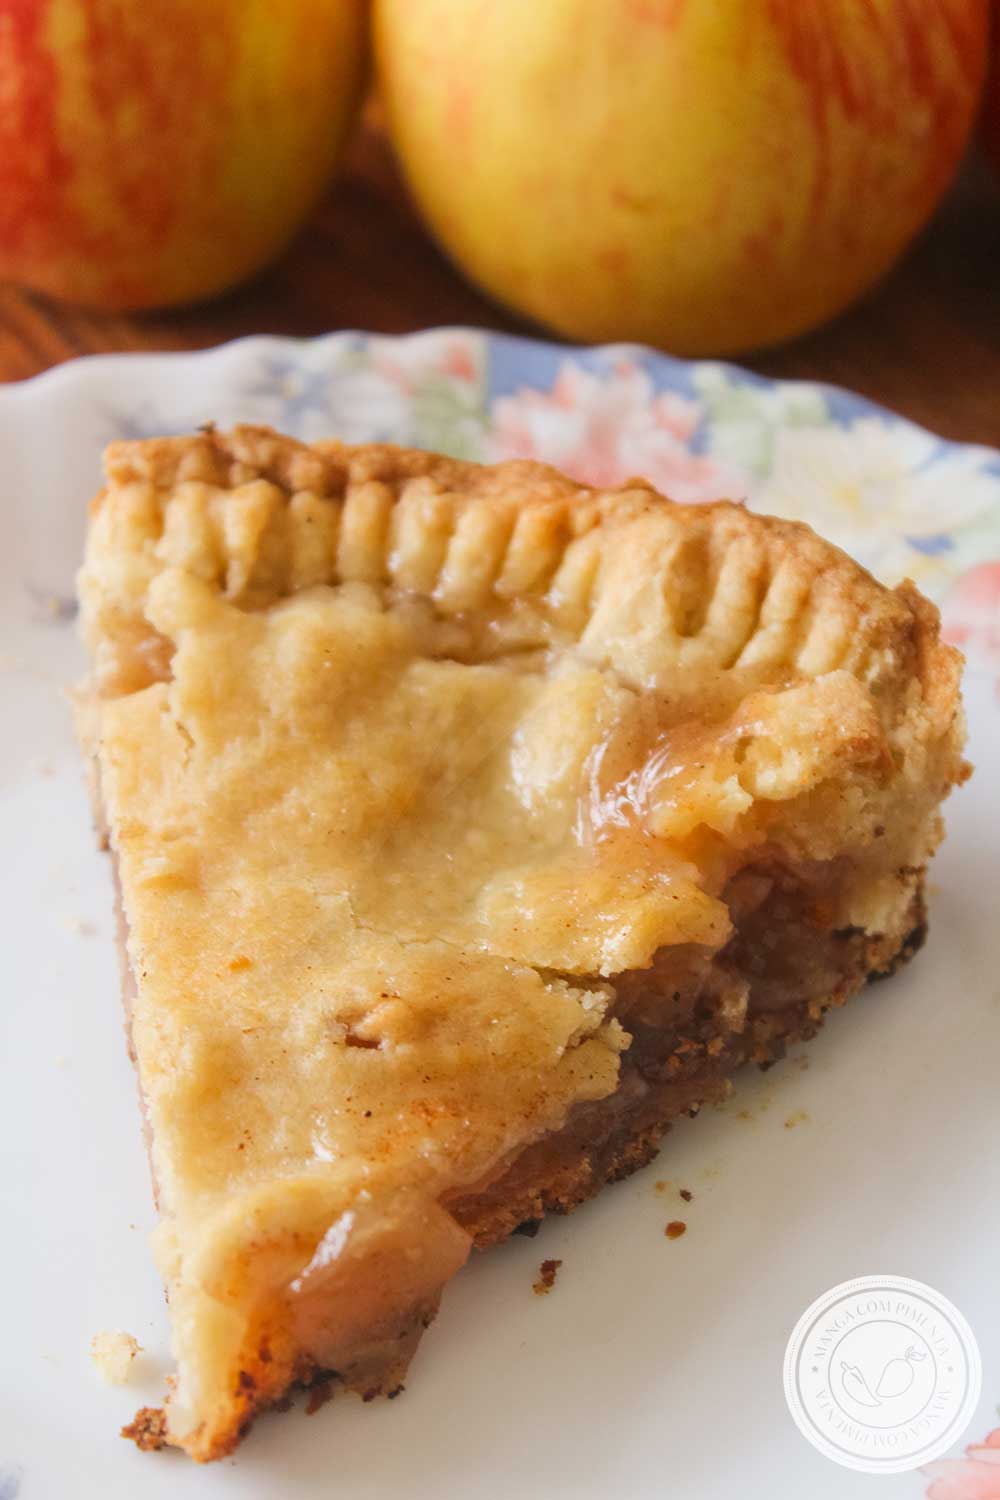 Receita de Apple Pie, verdadeira Torta de Maçã Americana para o seu café da tarde com os amigos.